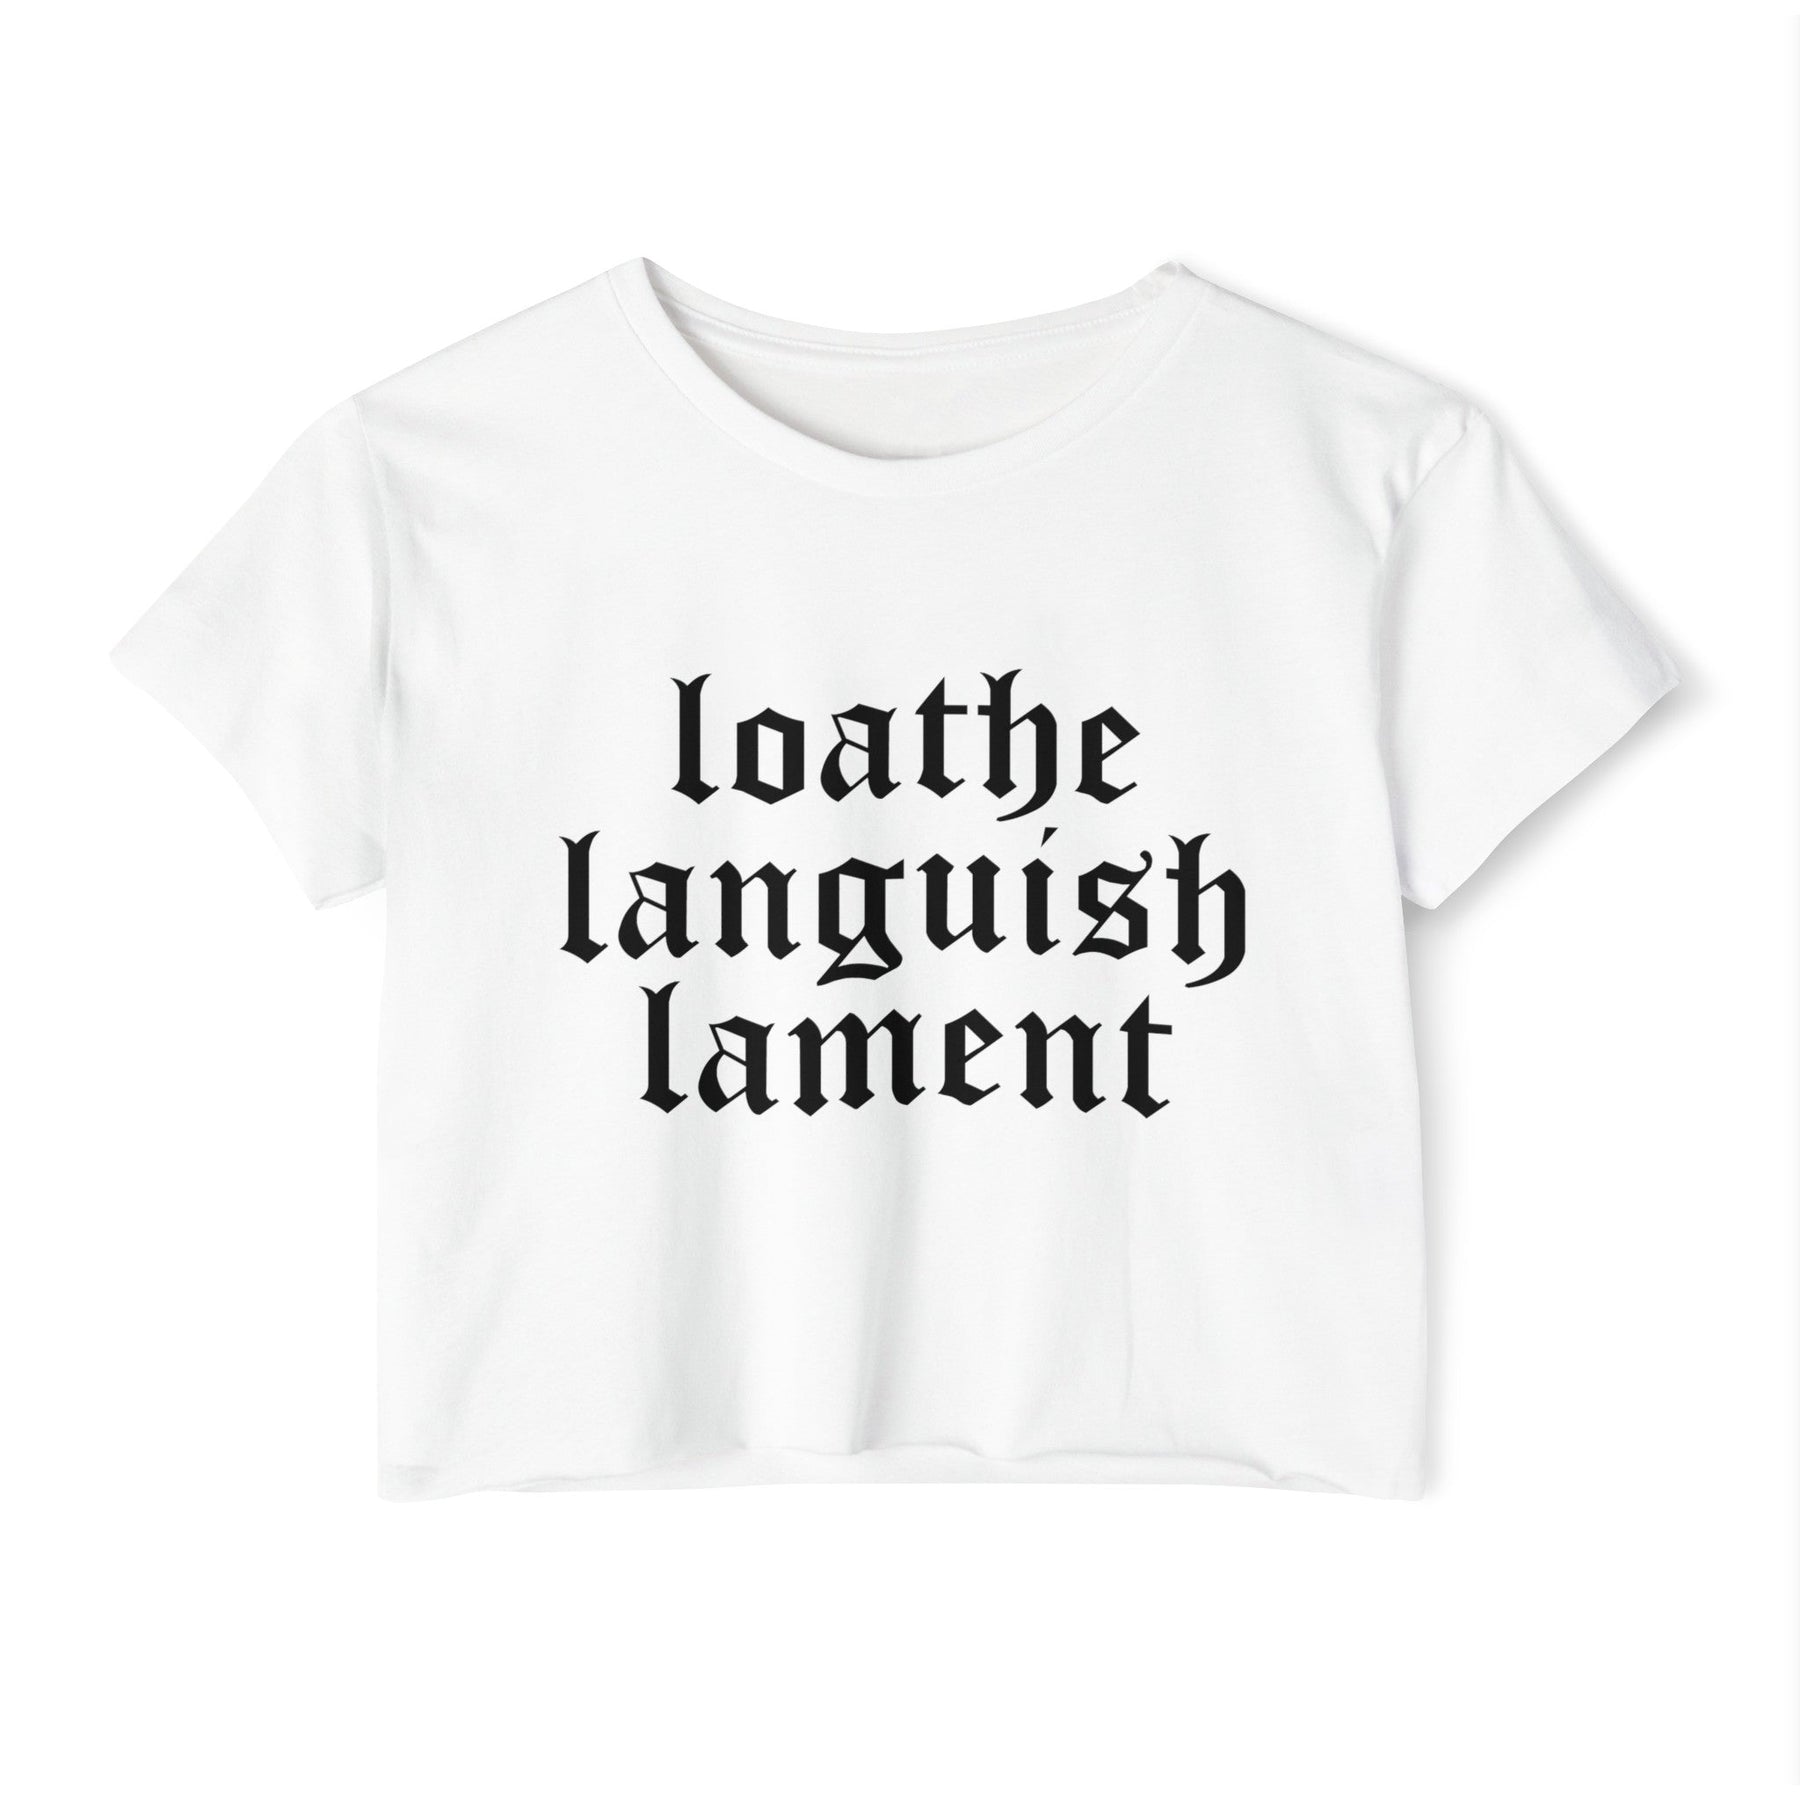 Loathe Languish Lament Women's Lightweight Crop Top - Goth Cloth Co.T - Shirt23472643441398388324